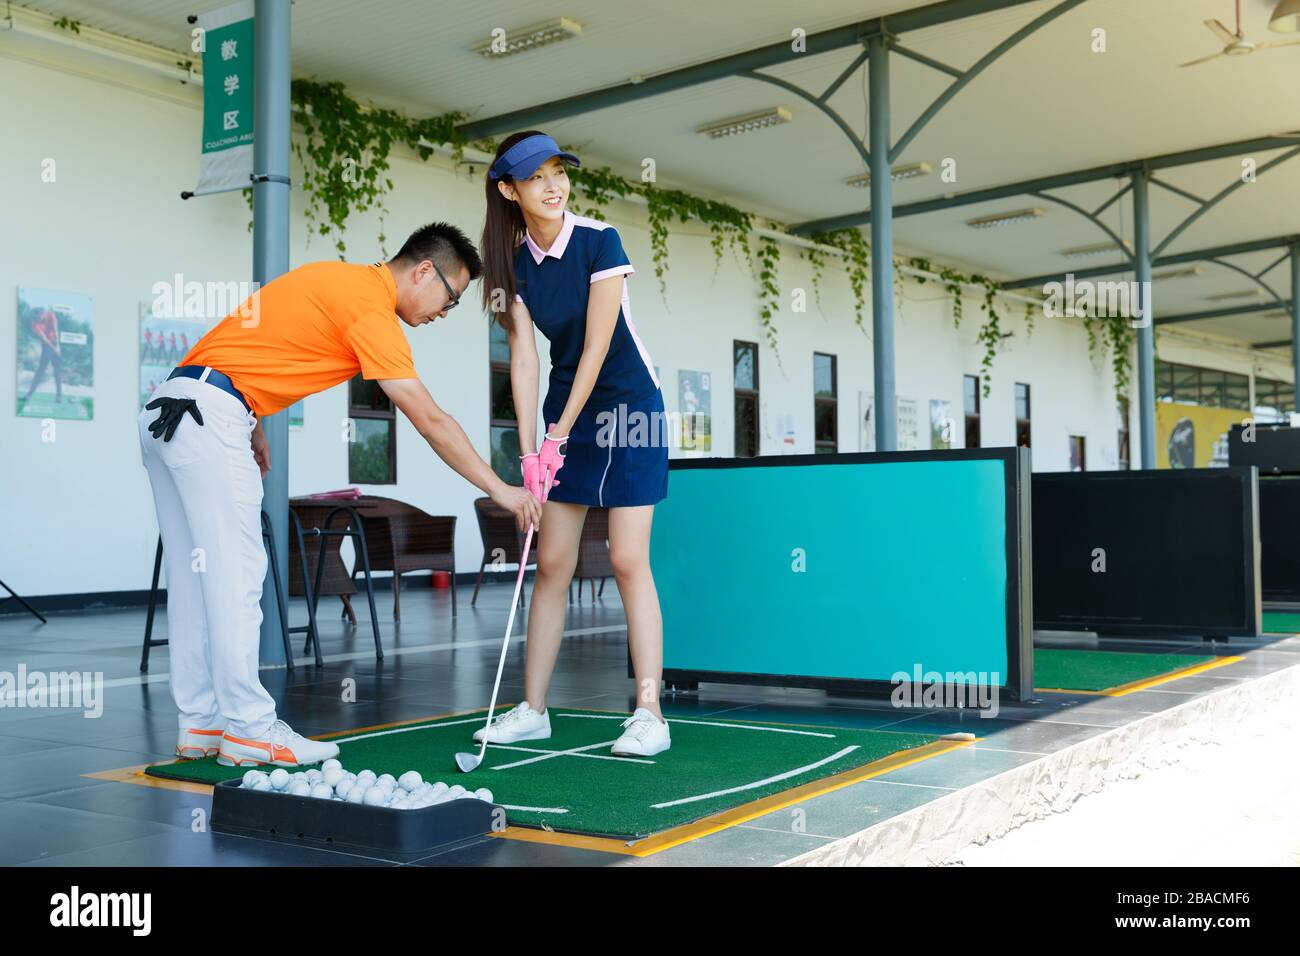 Le champ de pratique de l'entraînement de la jeune femme pour jouer au golf Banque D'Images